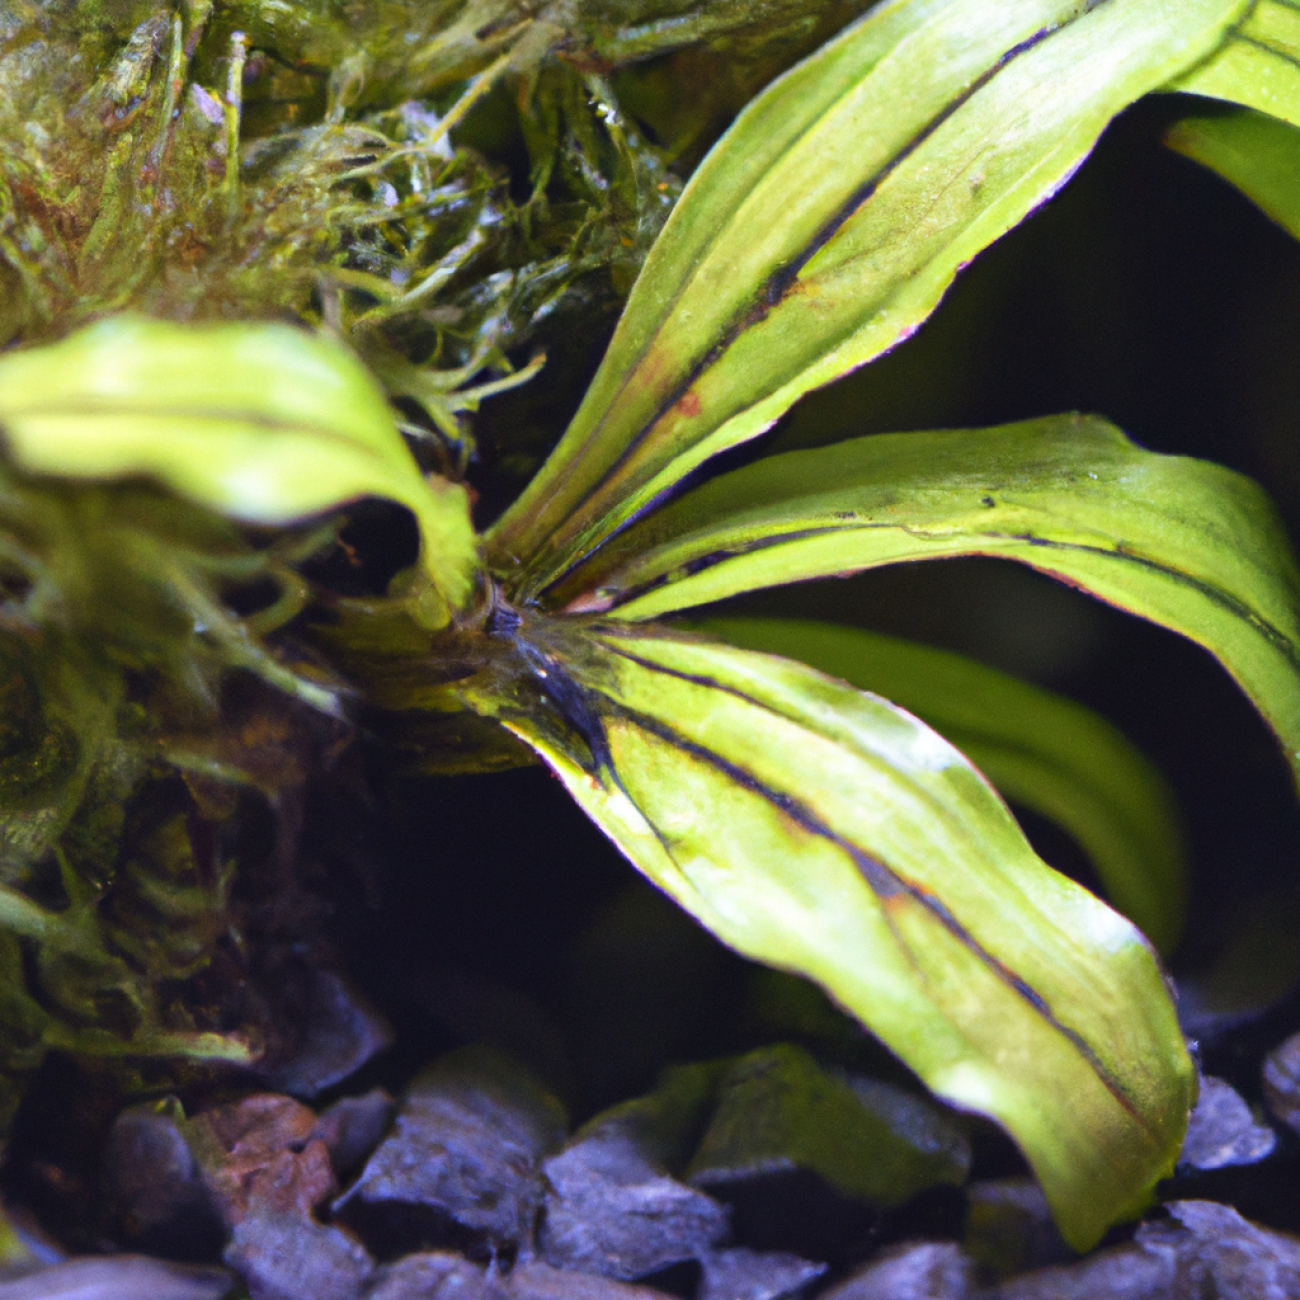 Bucephalandra Godzilla: Staňte se odborníkem na pěstování této exotické rostliny